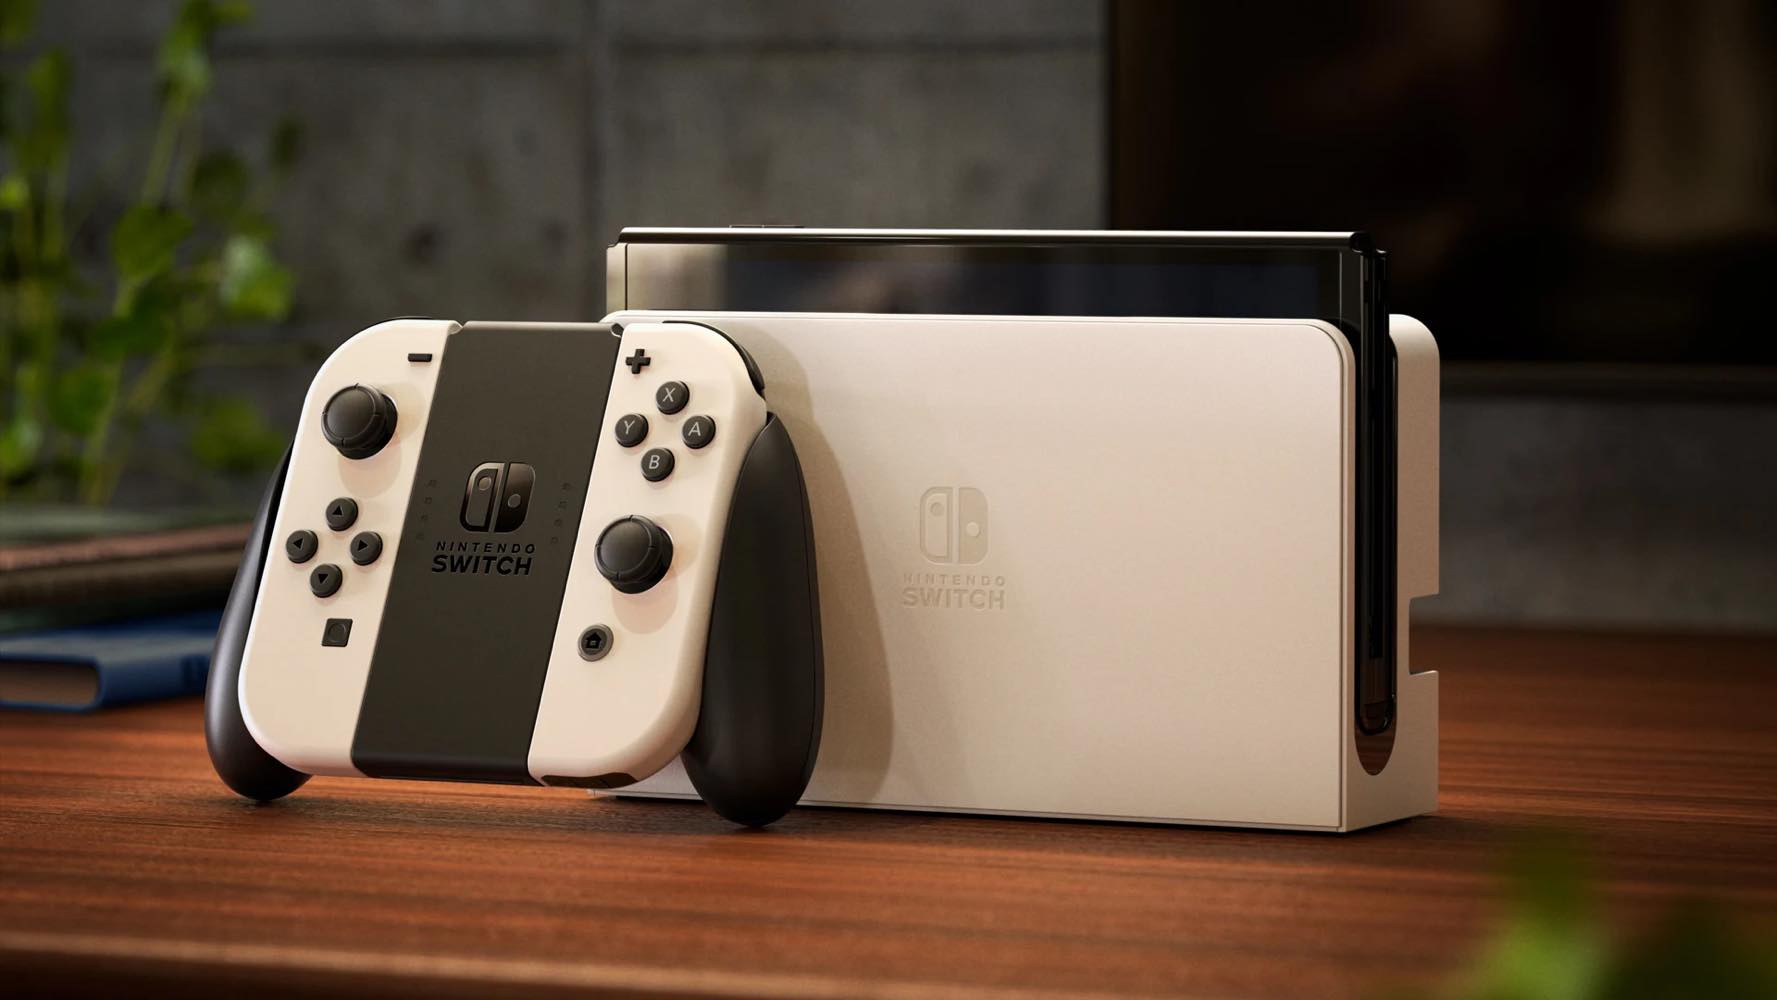 ｢Nintendo Switch 2｣は8インチの液晶ディスプレイを搭載か ｰ 年内に発売との噂